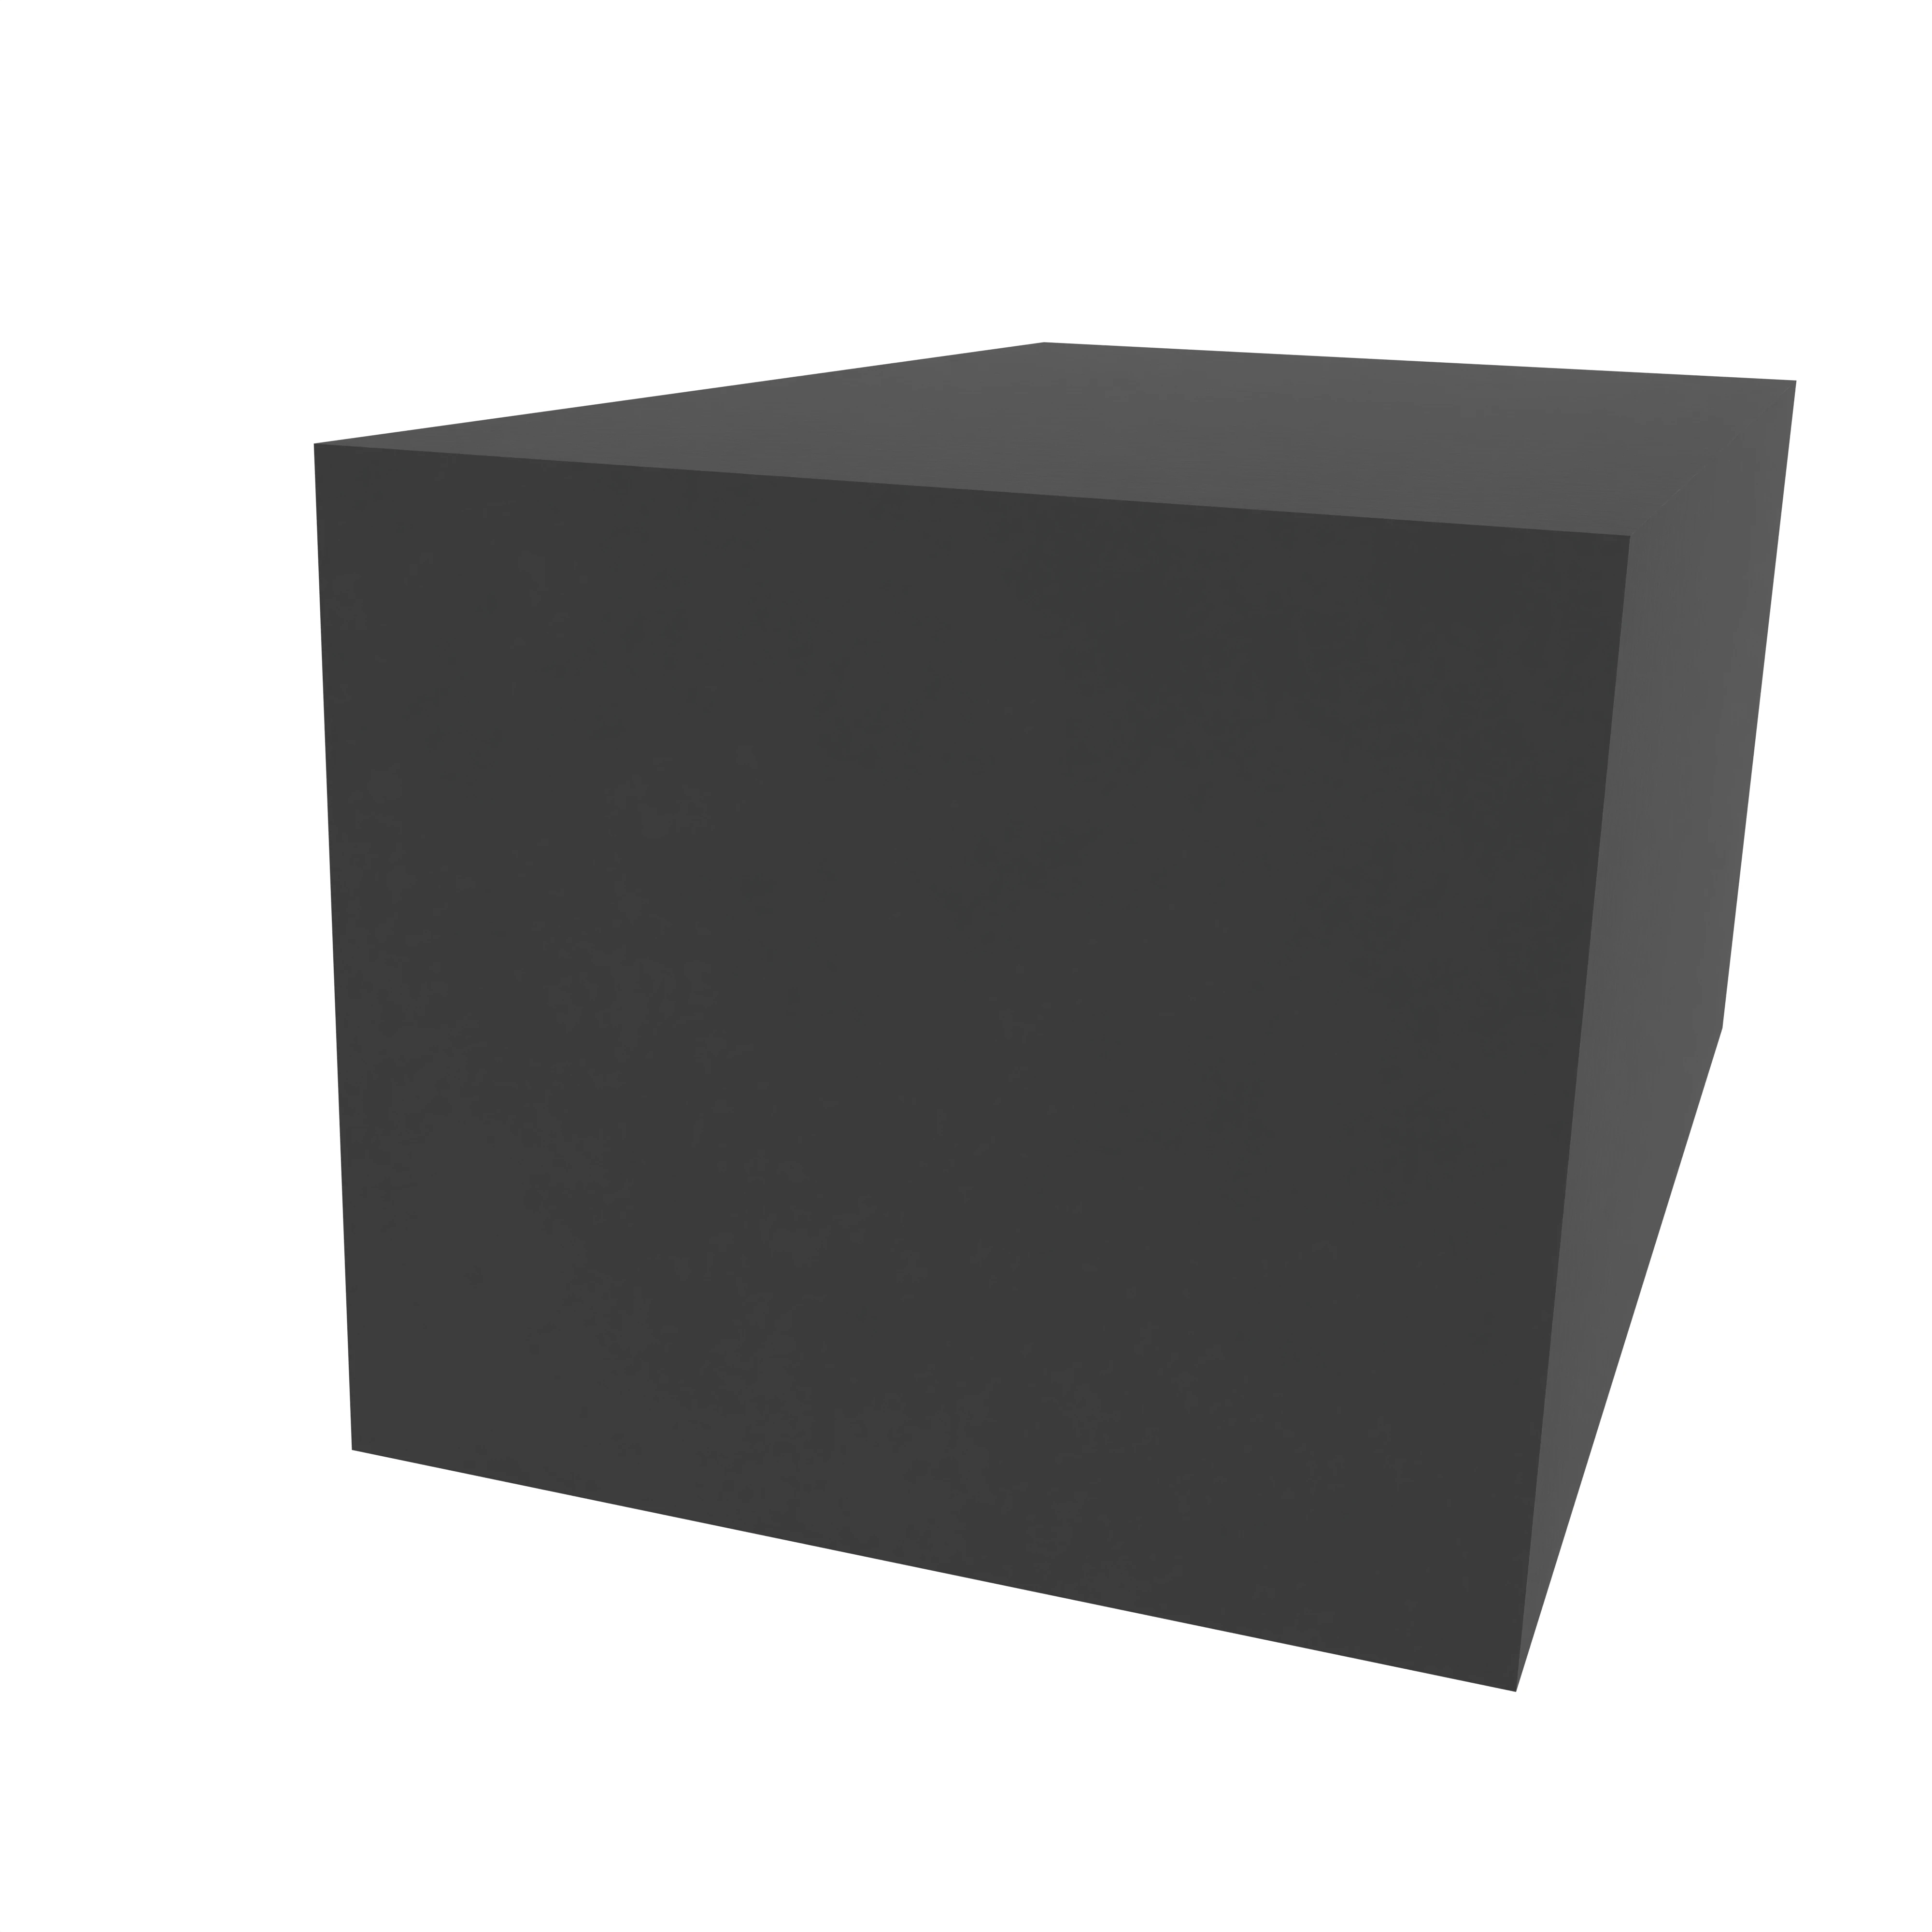 Moosgummidichtung vierkant | 35 mm Breite | Farbe: schwarz